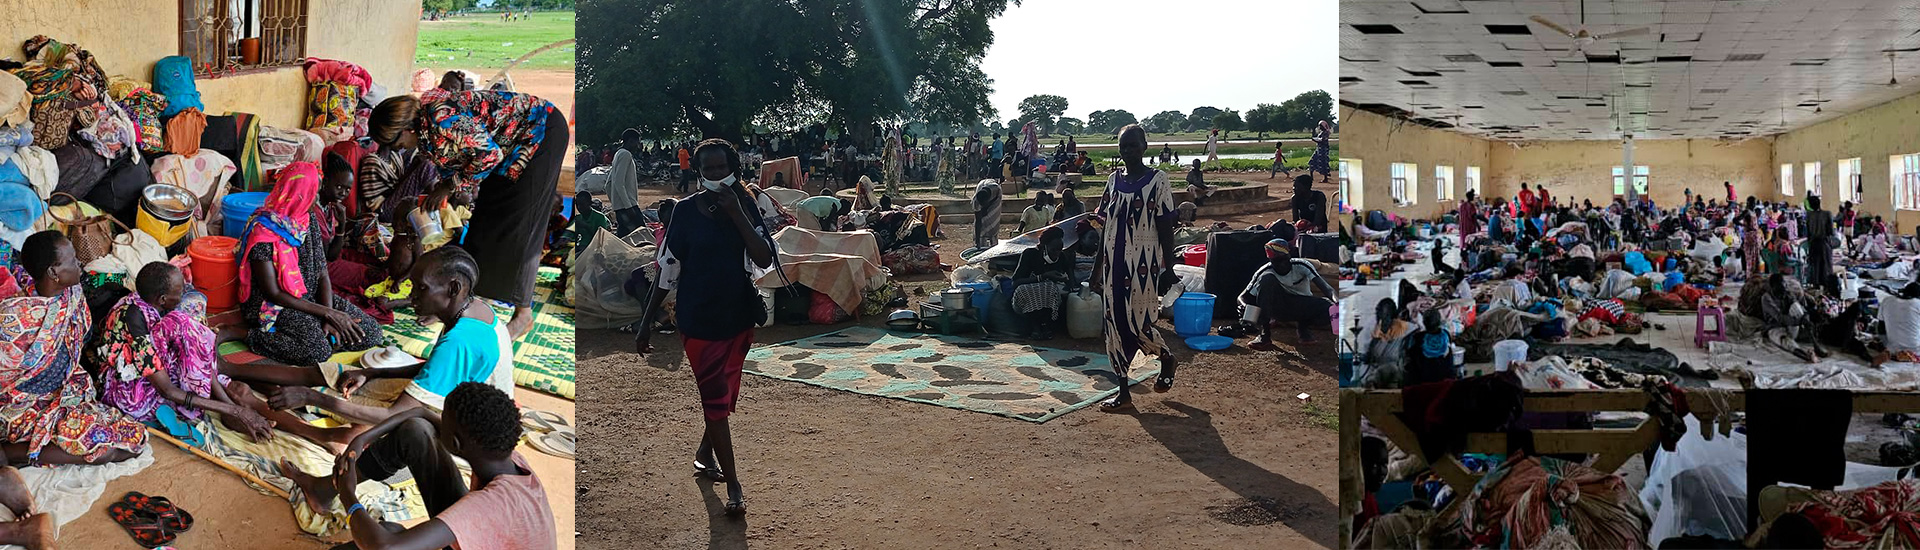 La doble huida por la guerra de los sursudaneses: primero a Sudán y ahora de vuelta a su país sin nada